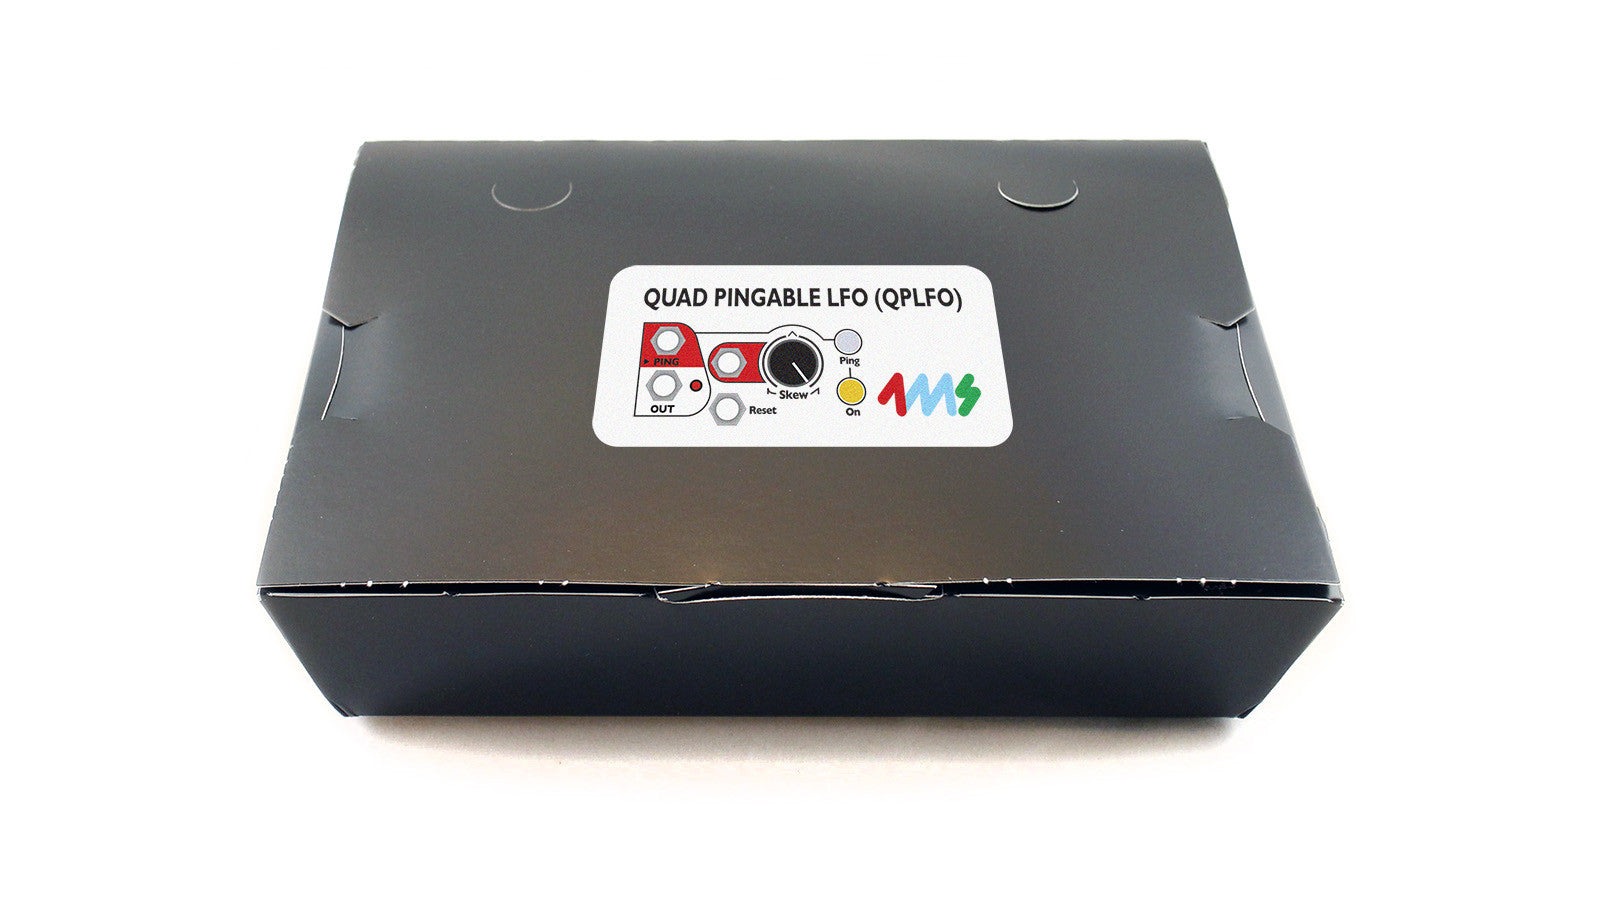 4ms Quad Pingable LFO kit